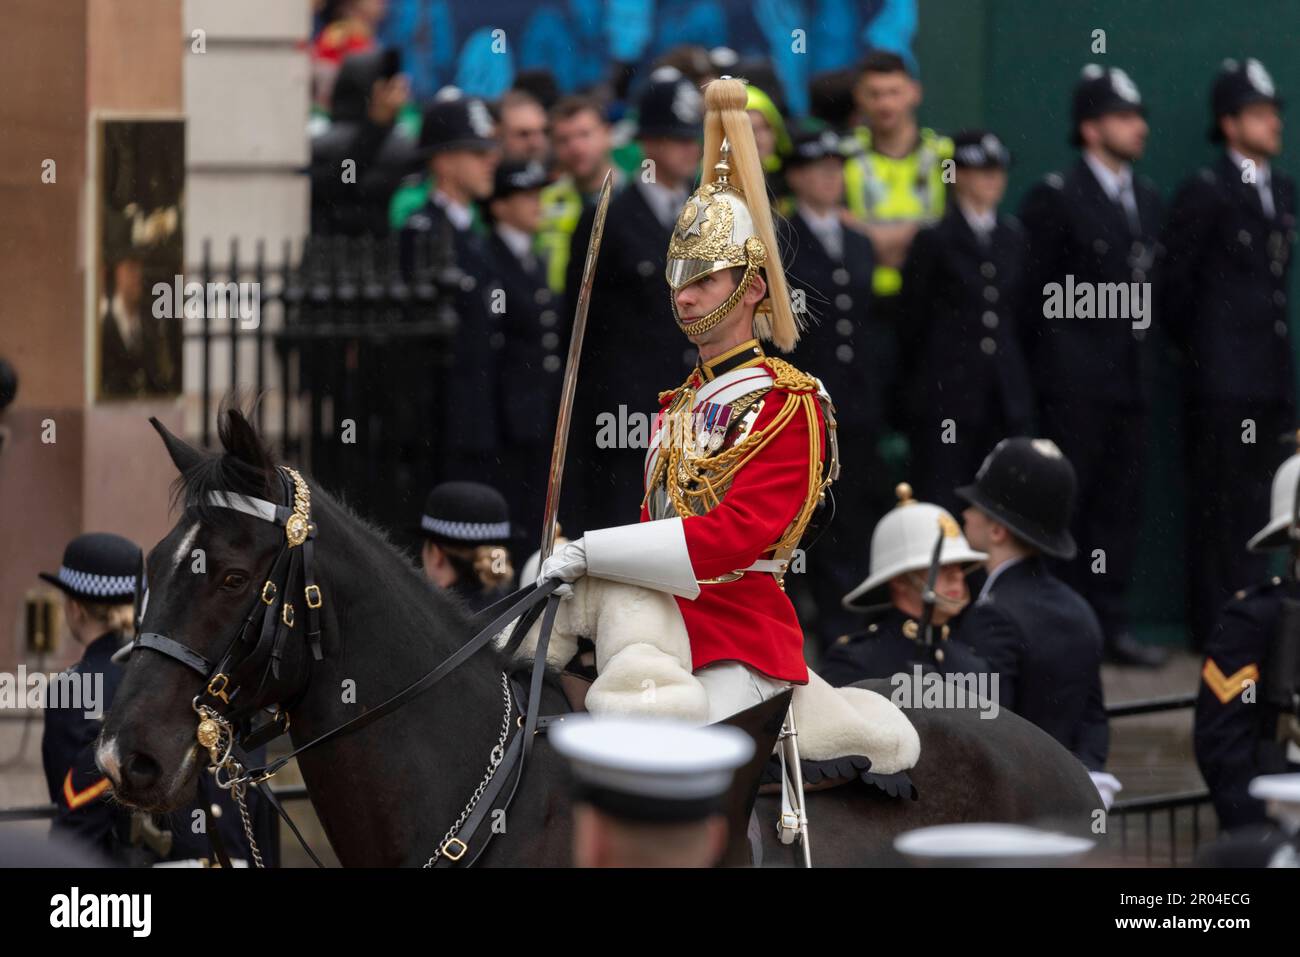 Les gardes de vie du régiment monté de cavalerie à Whitehall dans la procession royale se dirigeant vers l'abbaye de Westminster pour le couronnement du roi Charles III Banque D'Images